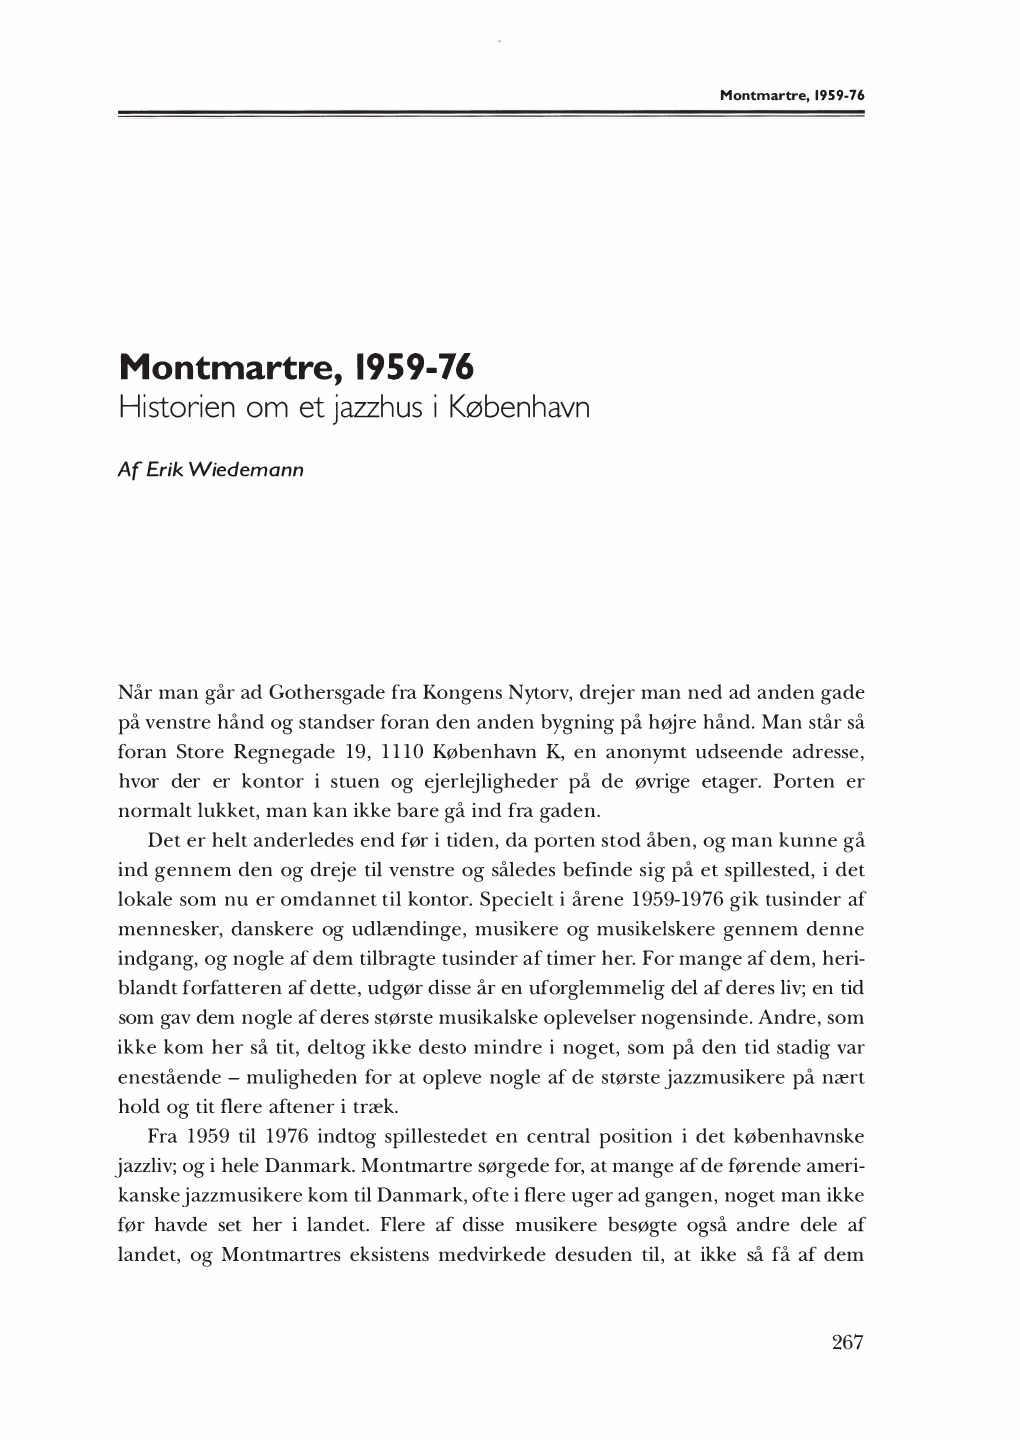 Erik Wiedemann Montmartre, 1959-76. Historien Om Et Jazzhus I